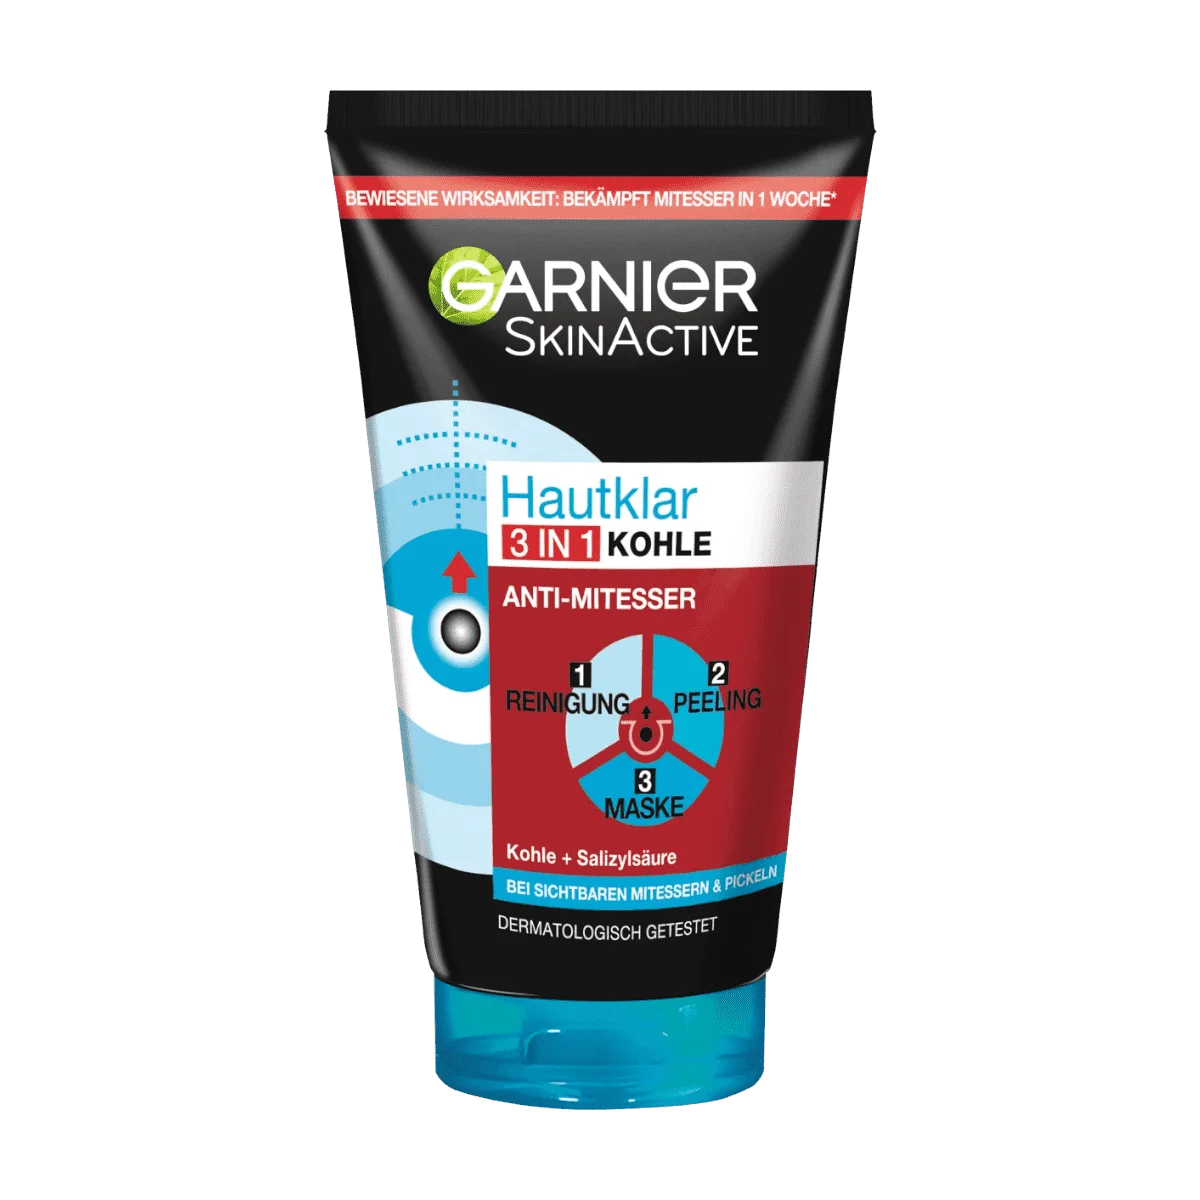 Garnier SkinActive Hautklar Reinigungsgel 3in1 Kohle, 150 ml